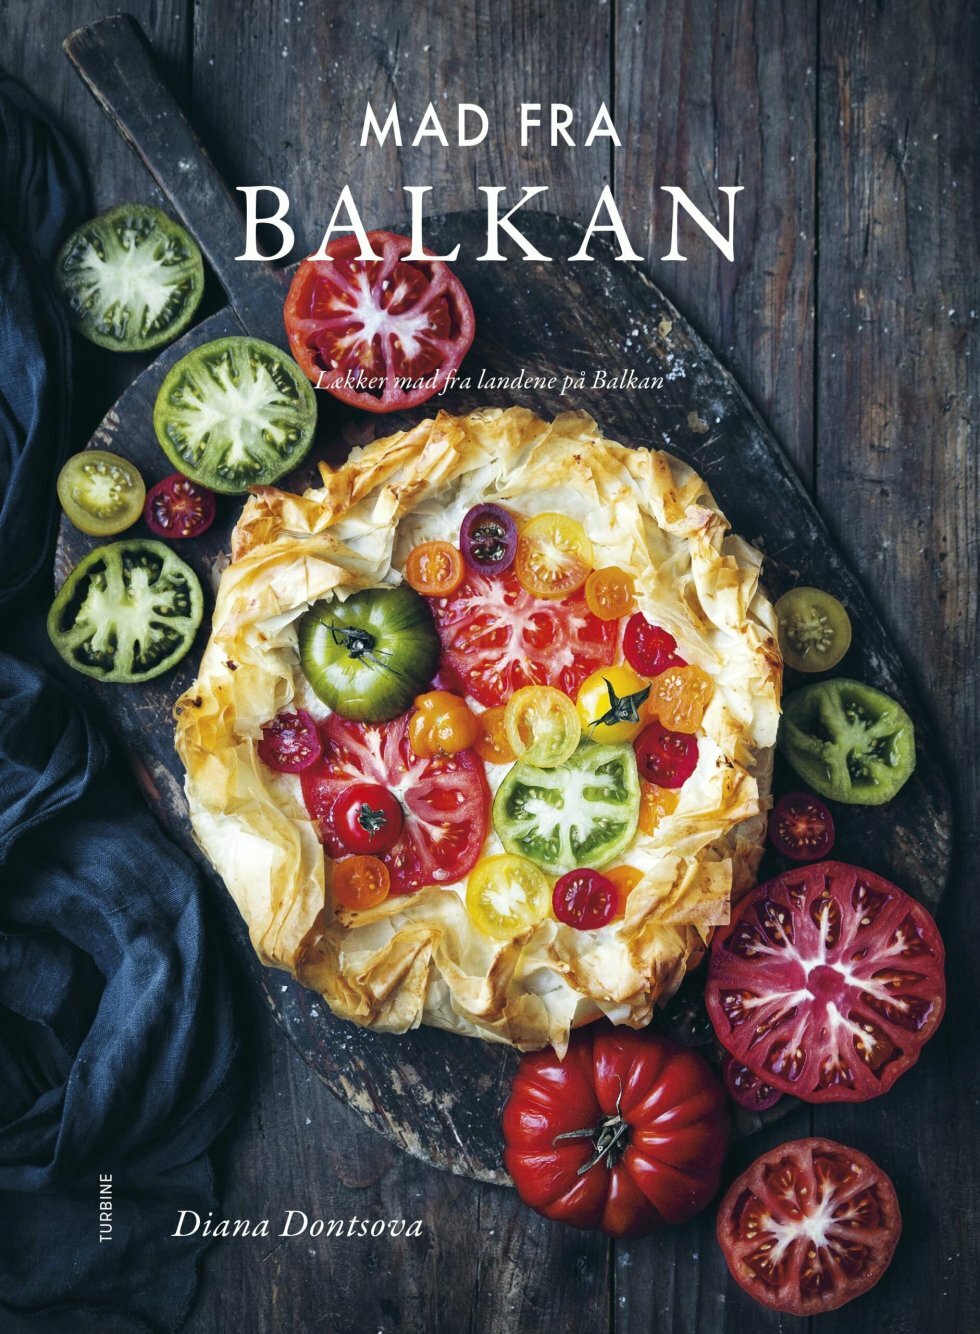 Ny kogebog giver dig et lynkursus i Balkan-køkkenet